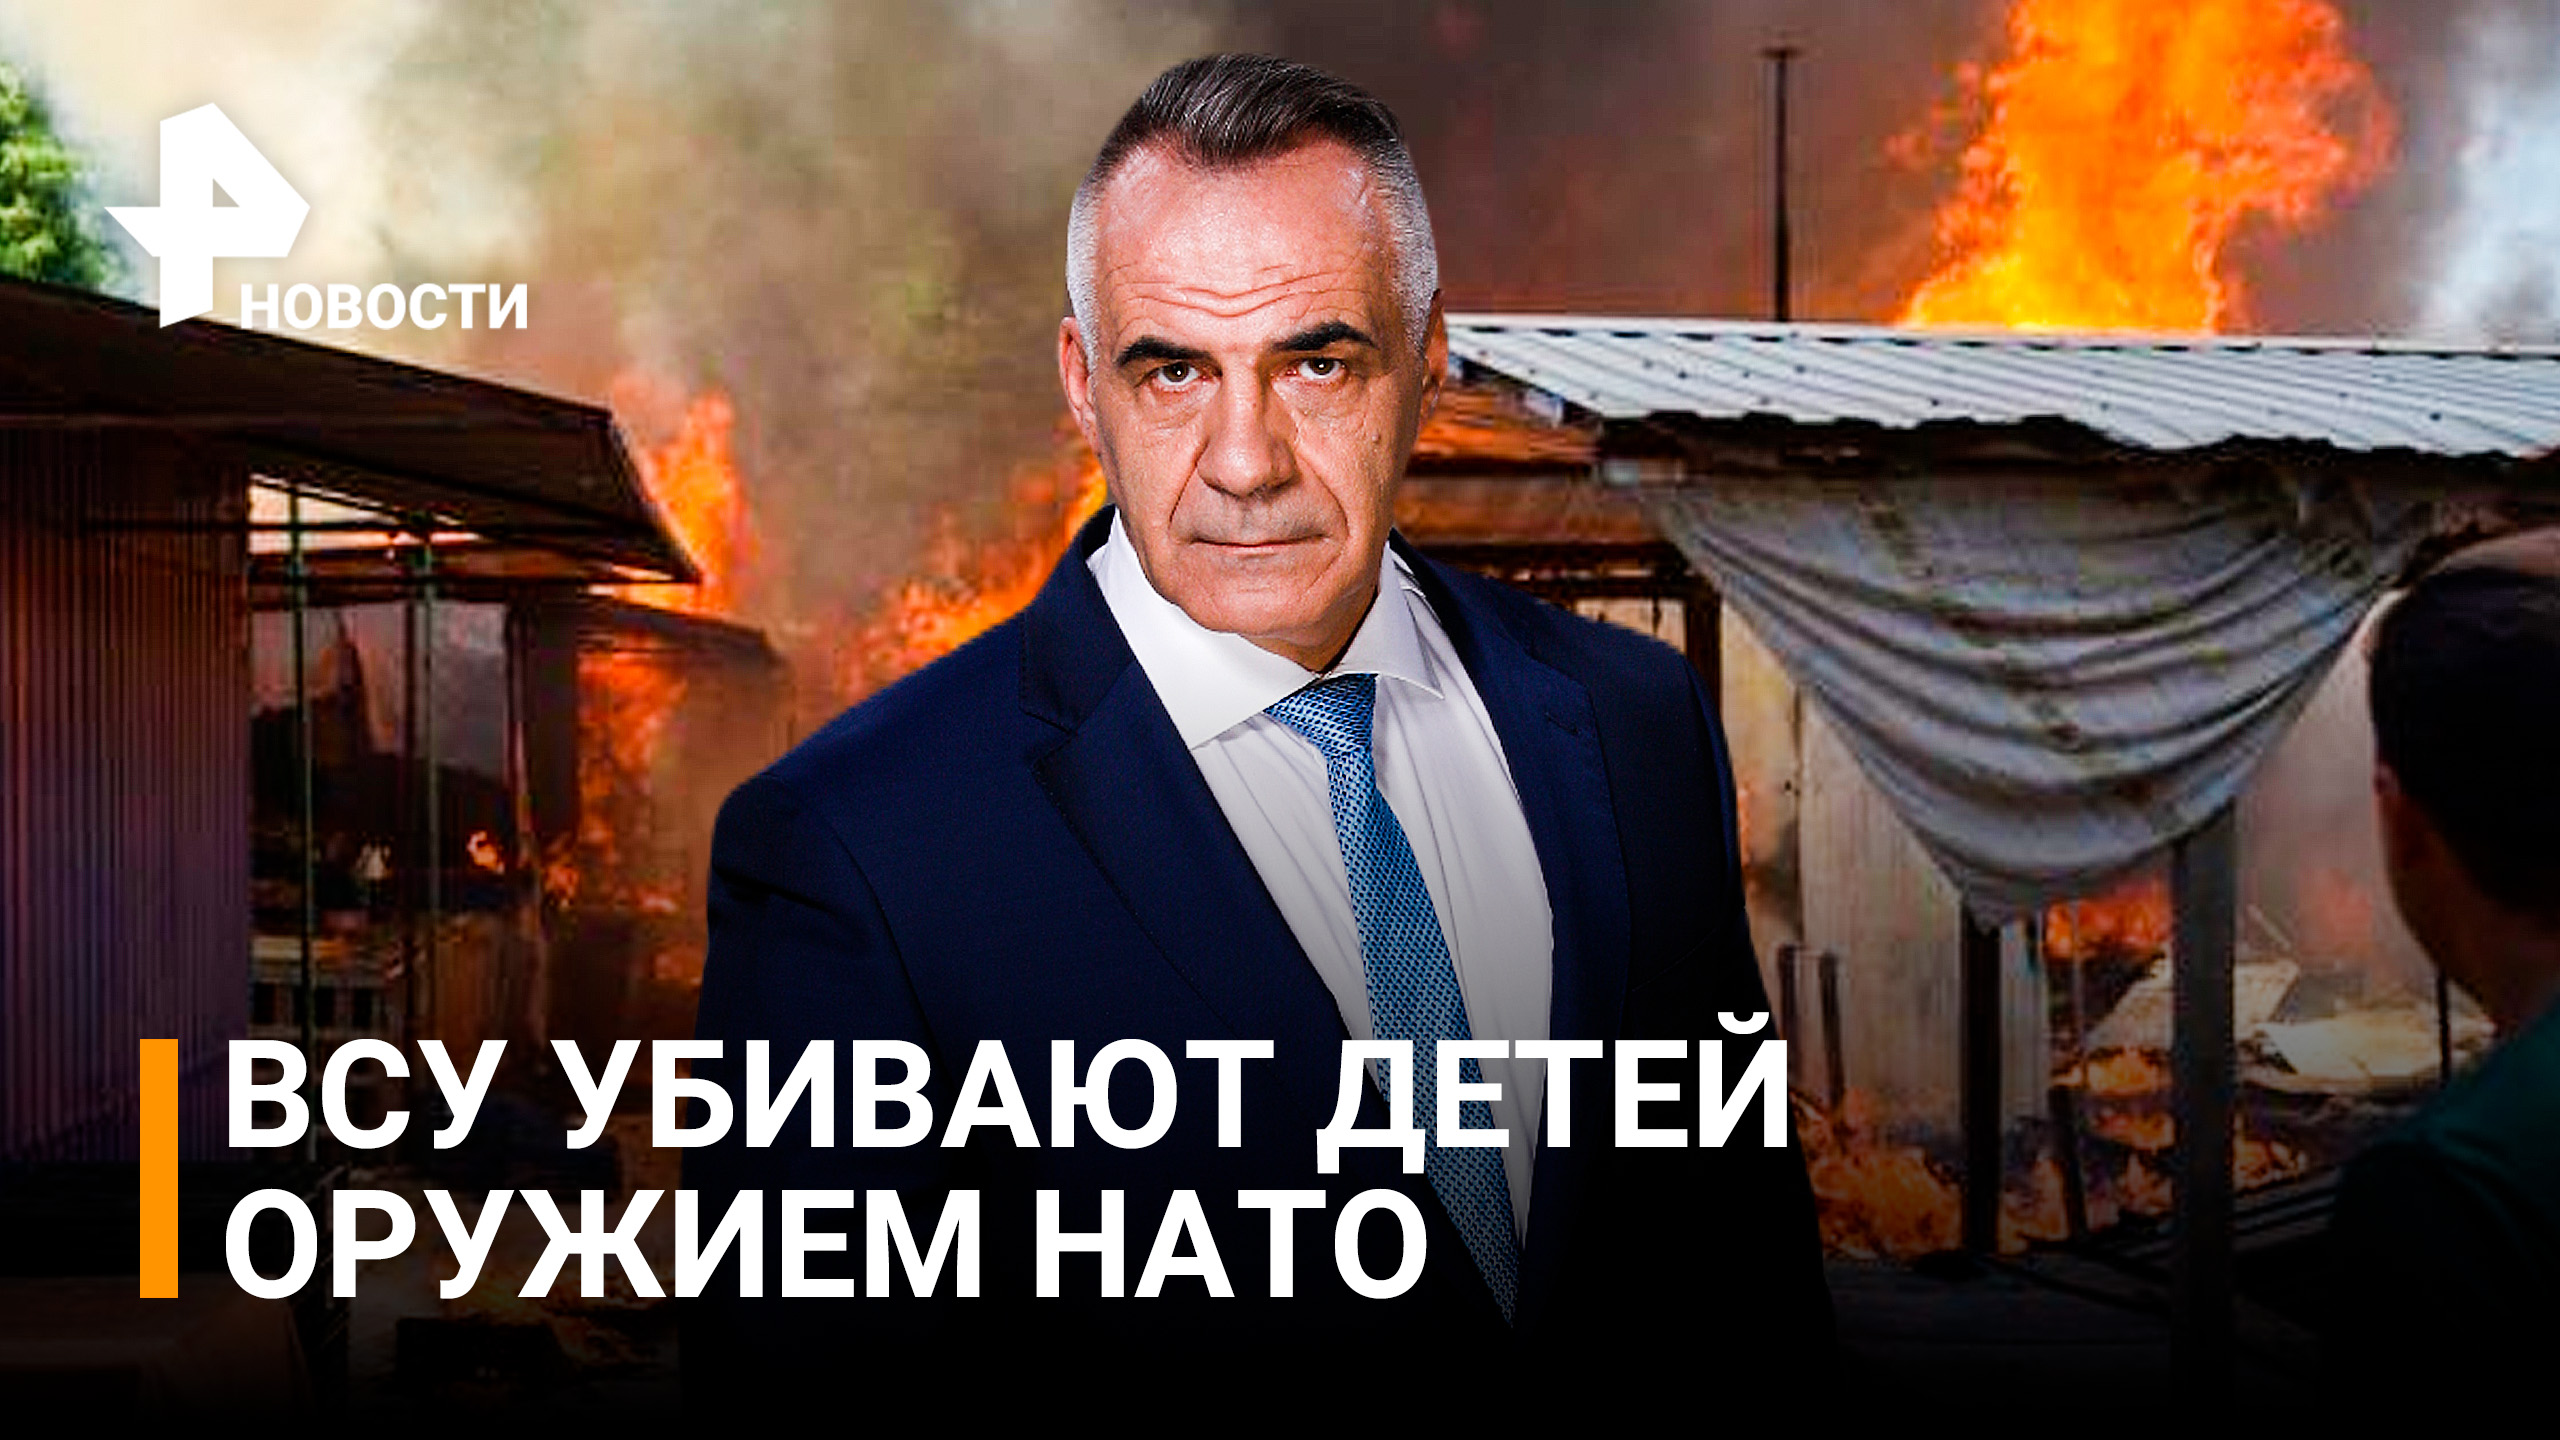 Донецк жаждет возмездия: ВСУ убивают детей натовскими снарядами / ИТОГИ с Петром Марченко